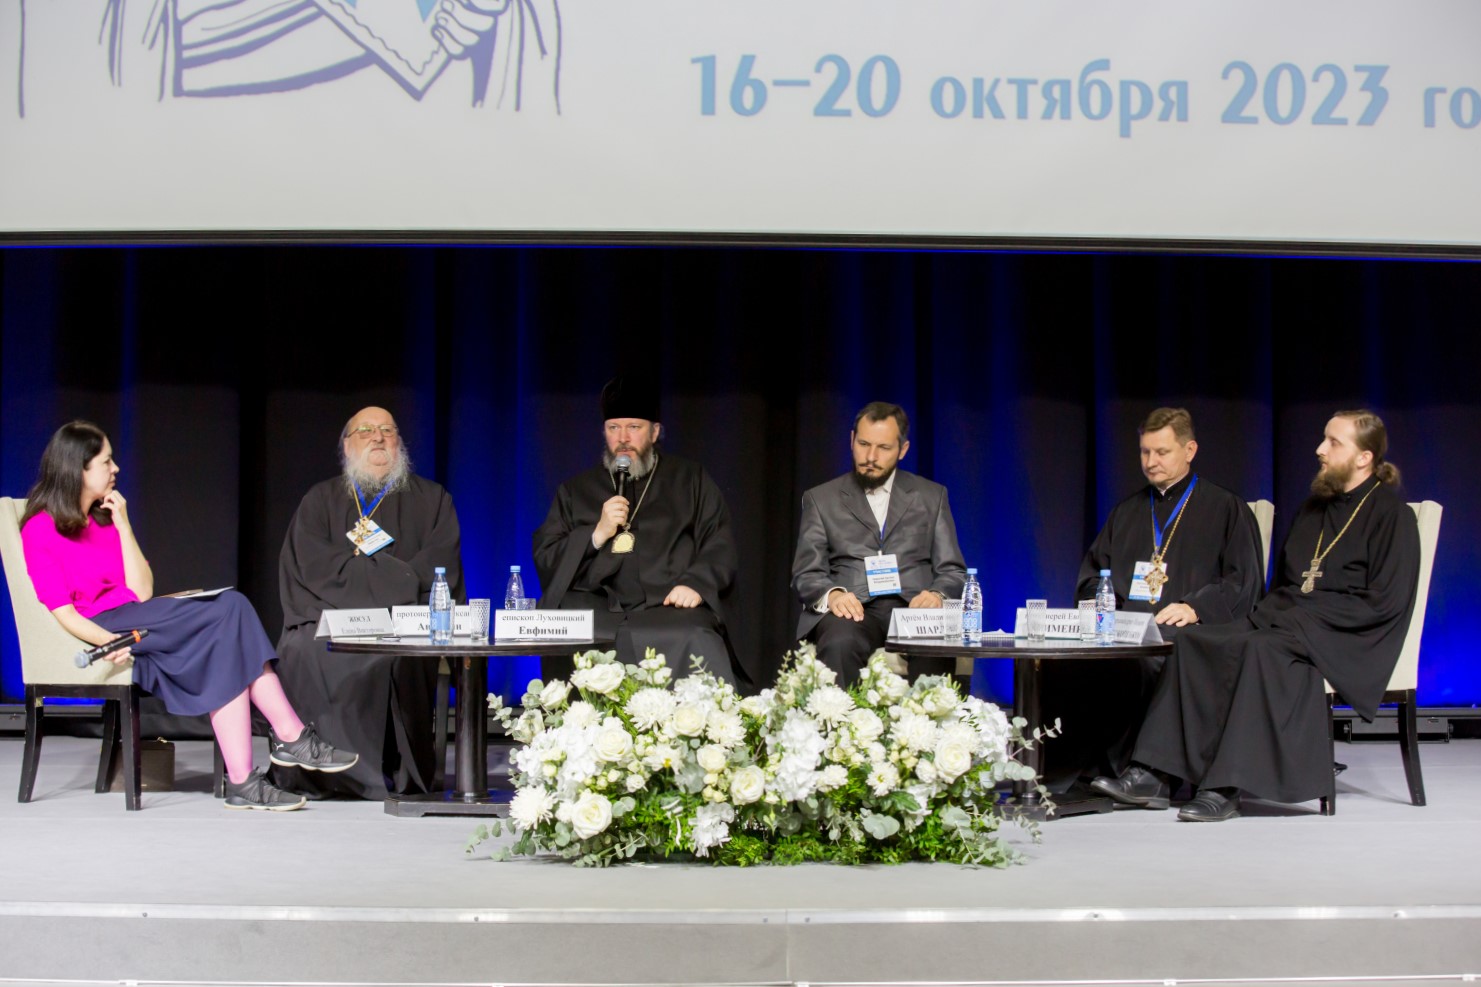 Панельная дискуссия об интеграции новых территорий в российское пространство прошла на фестивале «Вера и слово»